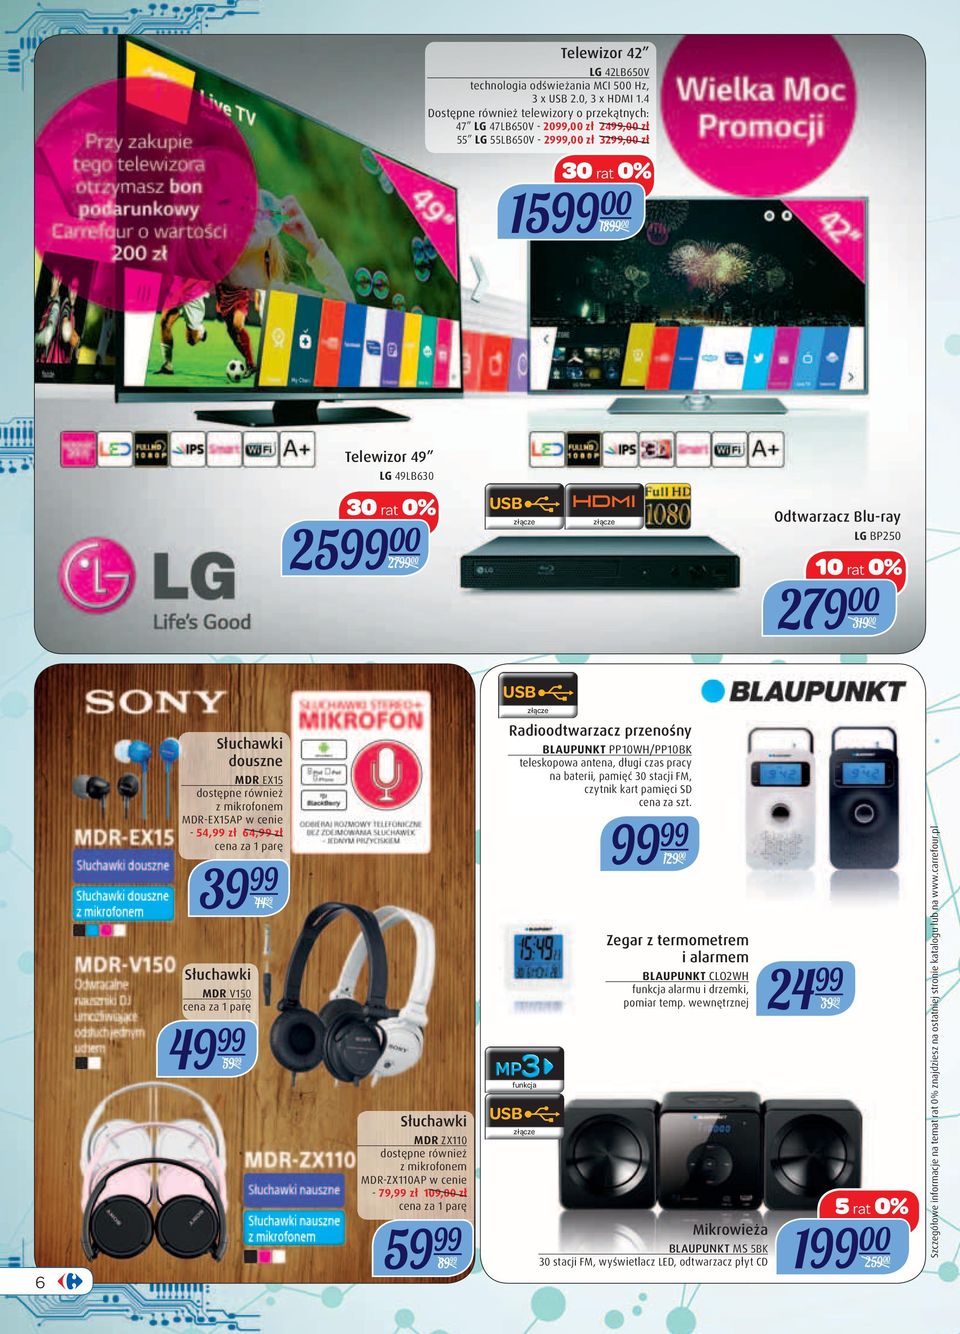 Blu-ray LG BP250 279 00 319 00 USB 6 Słuchawki douszne MDR EX15 dostępne również z mikrofonem MDR-EX15AP w cenie - 54,99 zł 64,99 zł cena za 1 parę 39 99 44 99 Słuchawki MDR V150 cena za 1 parę 59 99